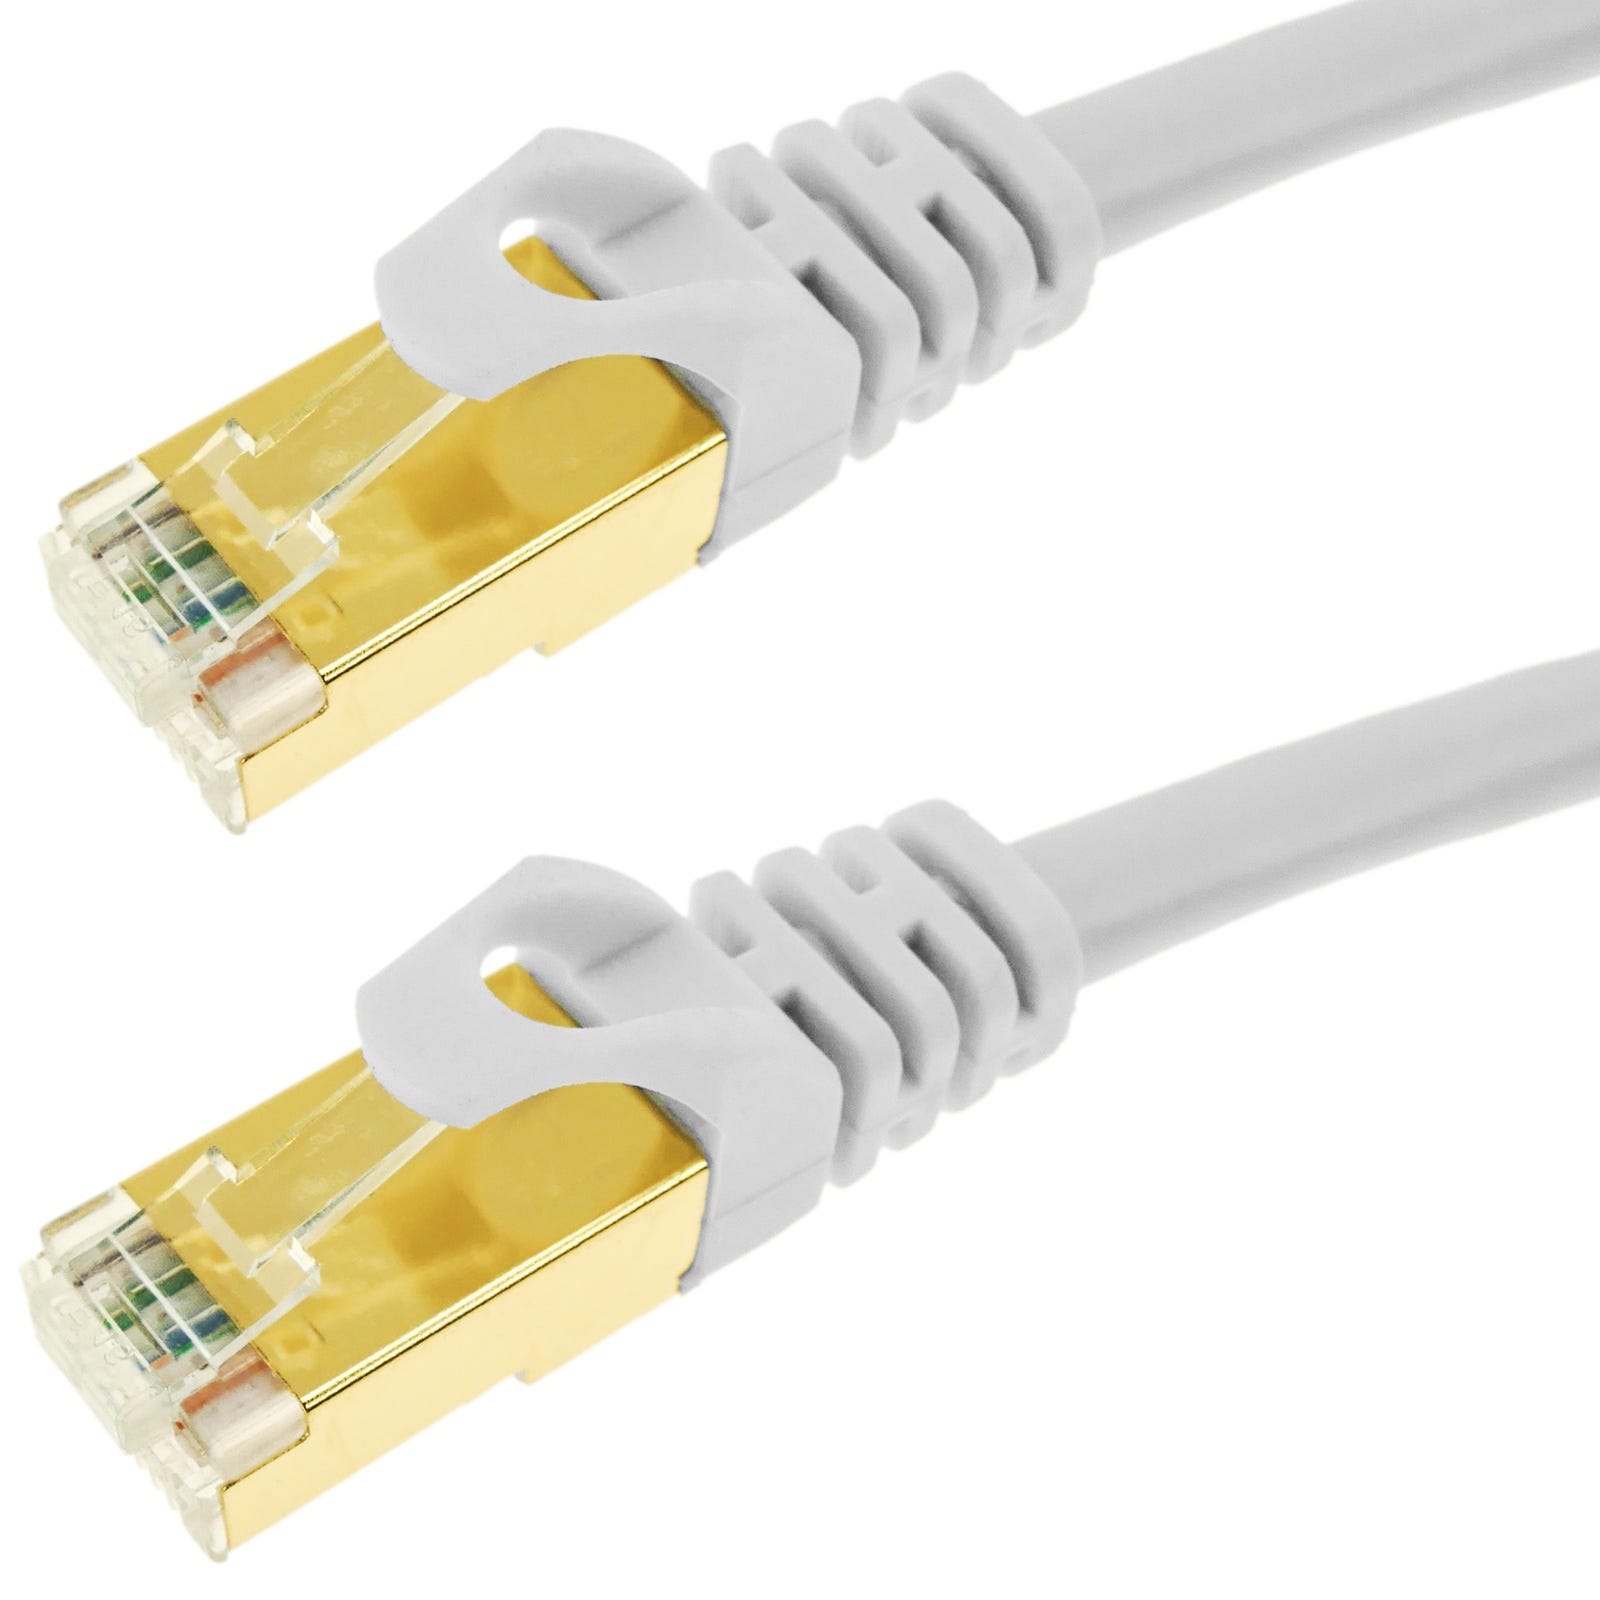 Cable de red ethernet 20 metros LAN SFTP RJ45 Cat.7 negro - Cables de red -  Los mejores precios